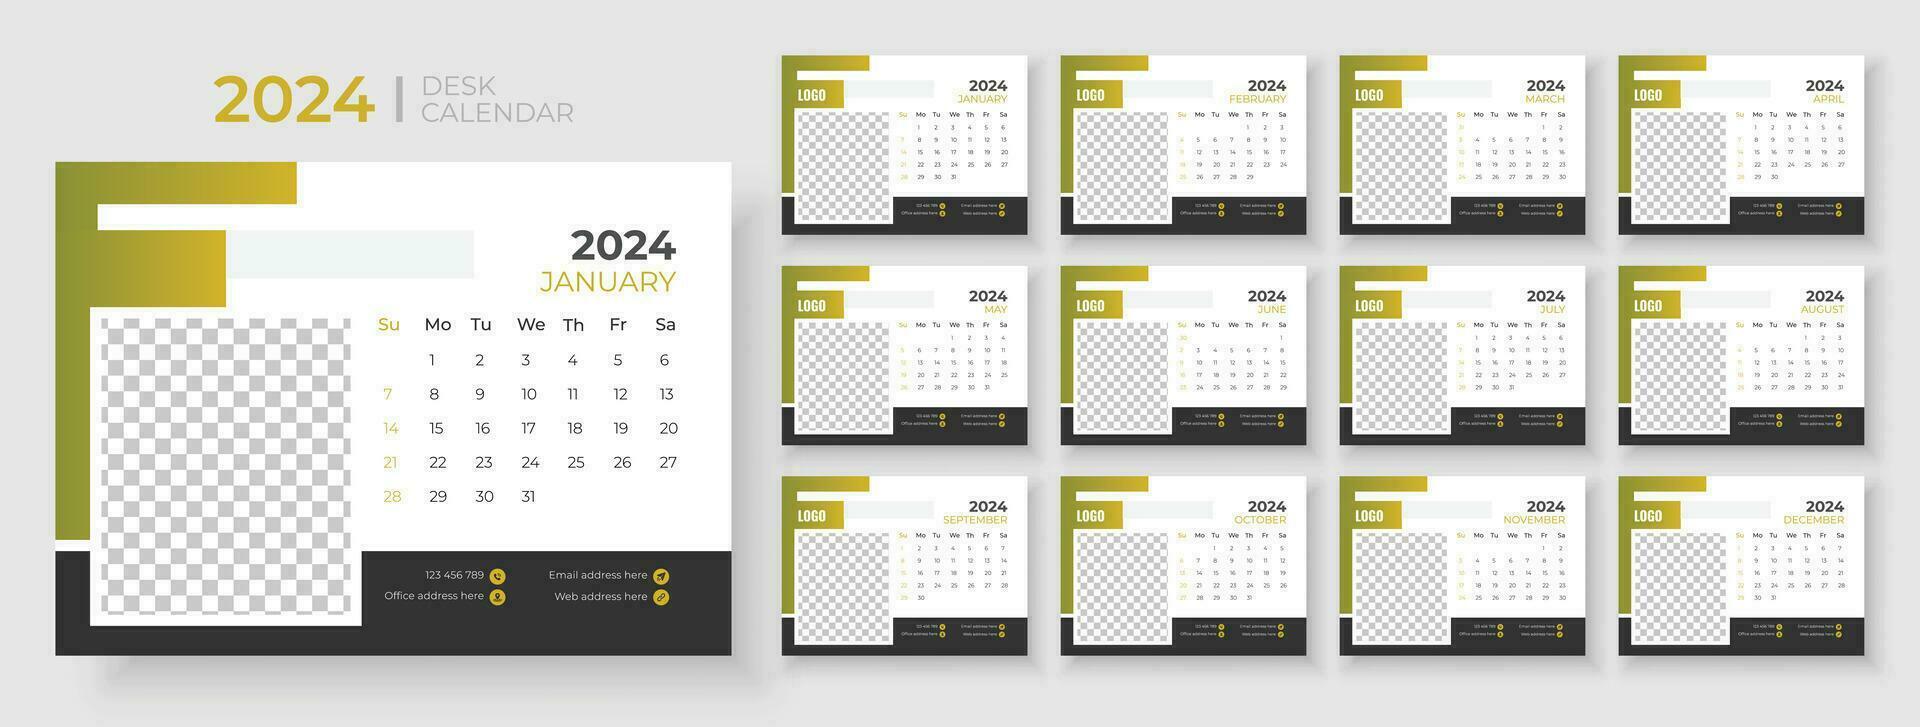 escrivaninha calendário modelo 2024, semana começa em Domingo, planejador para 2024 ano, modelo para anual calendário 2024 vetor